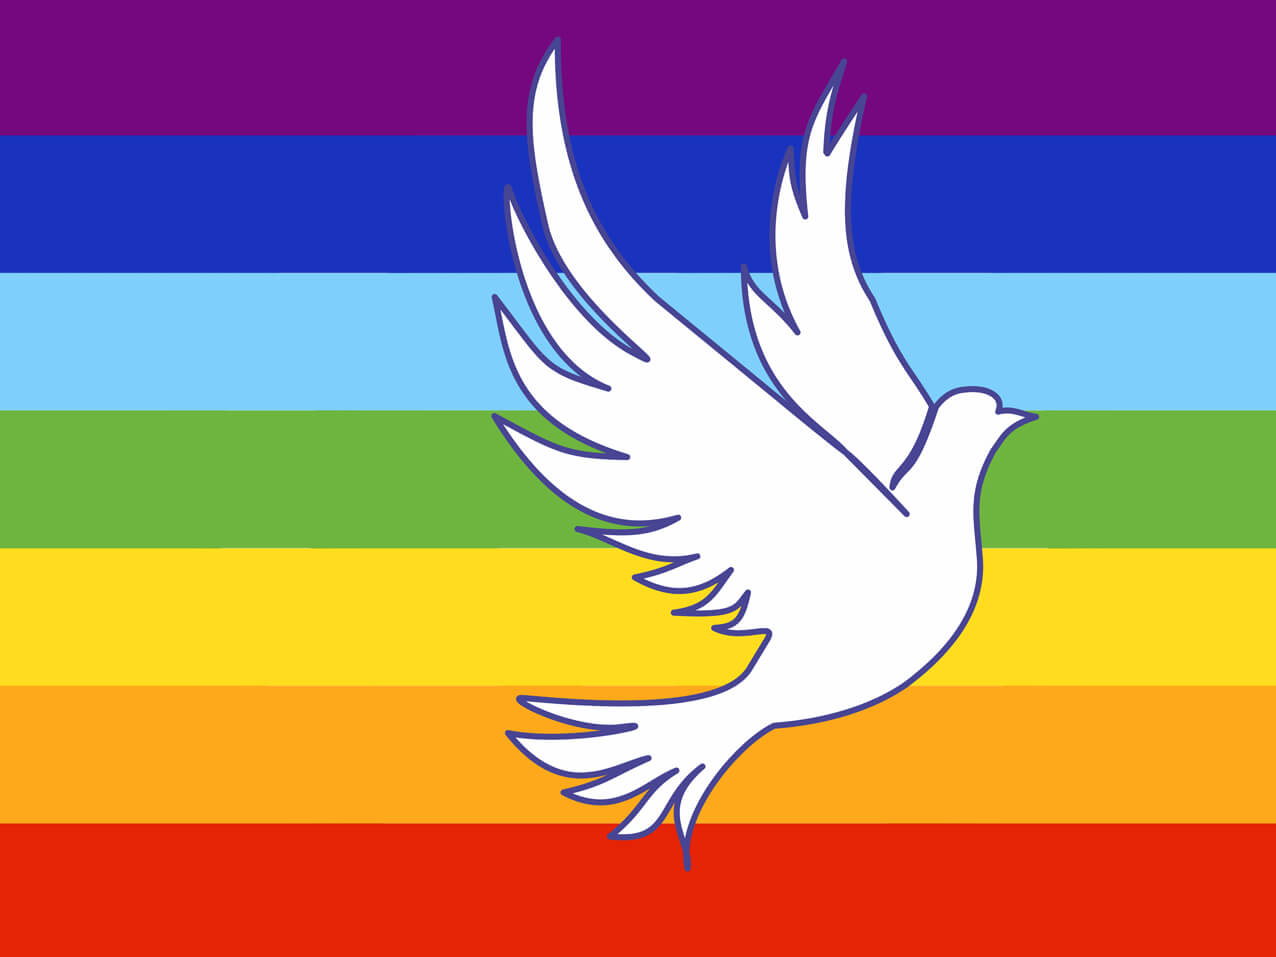 Regenbogenfahne Peace 90x150, Friedensfahne, Regenbogenflagge